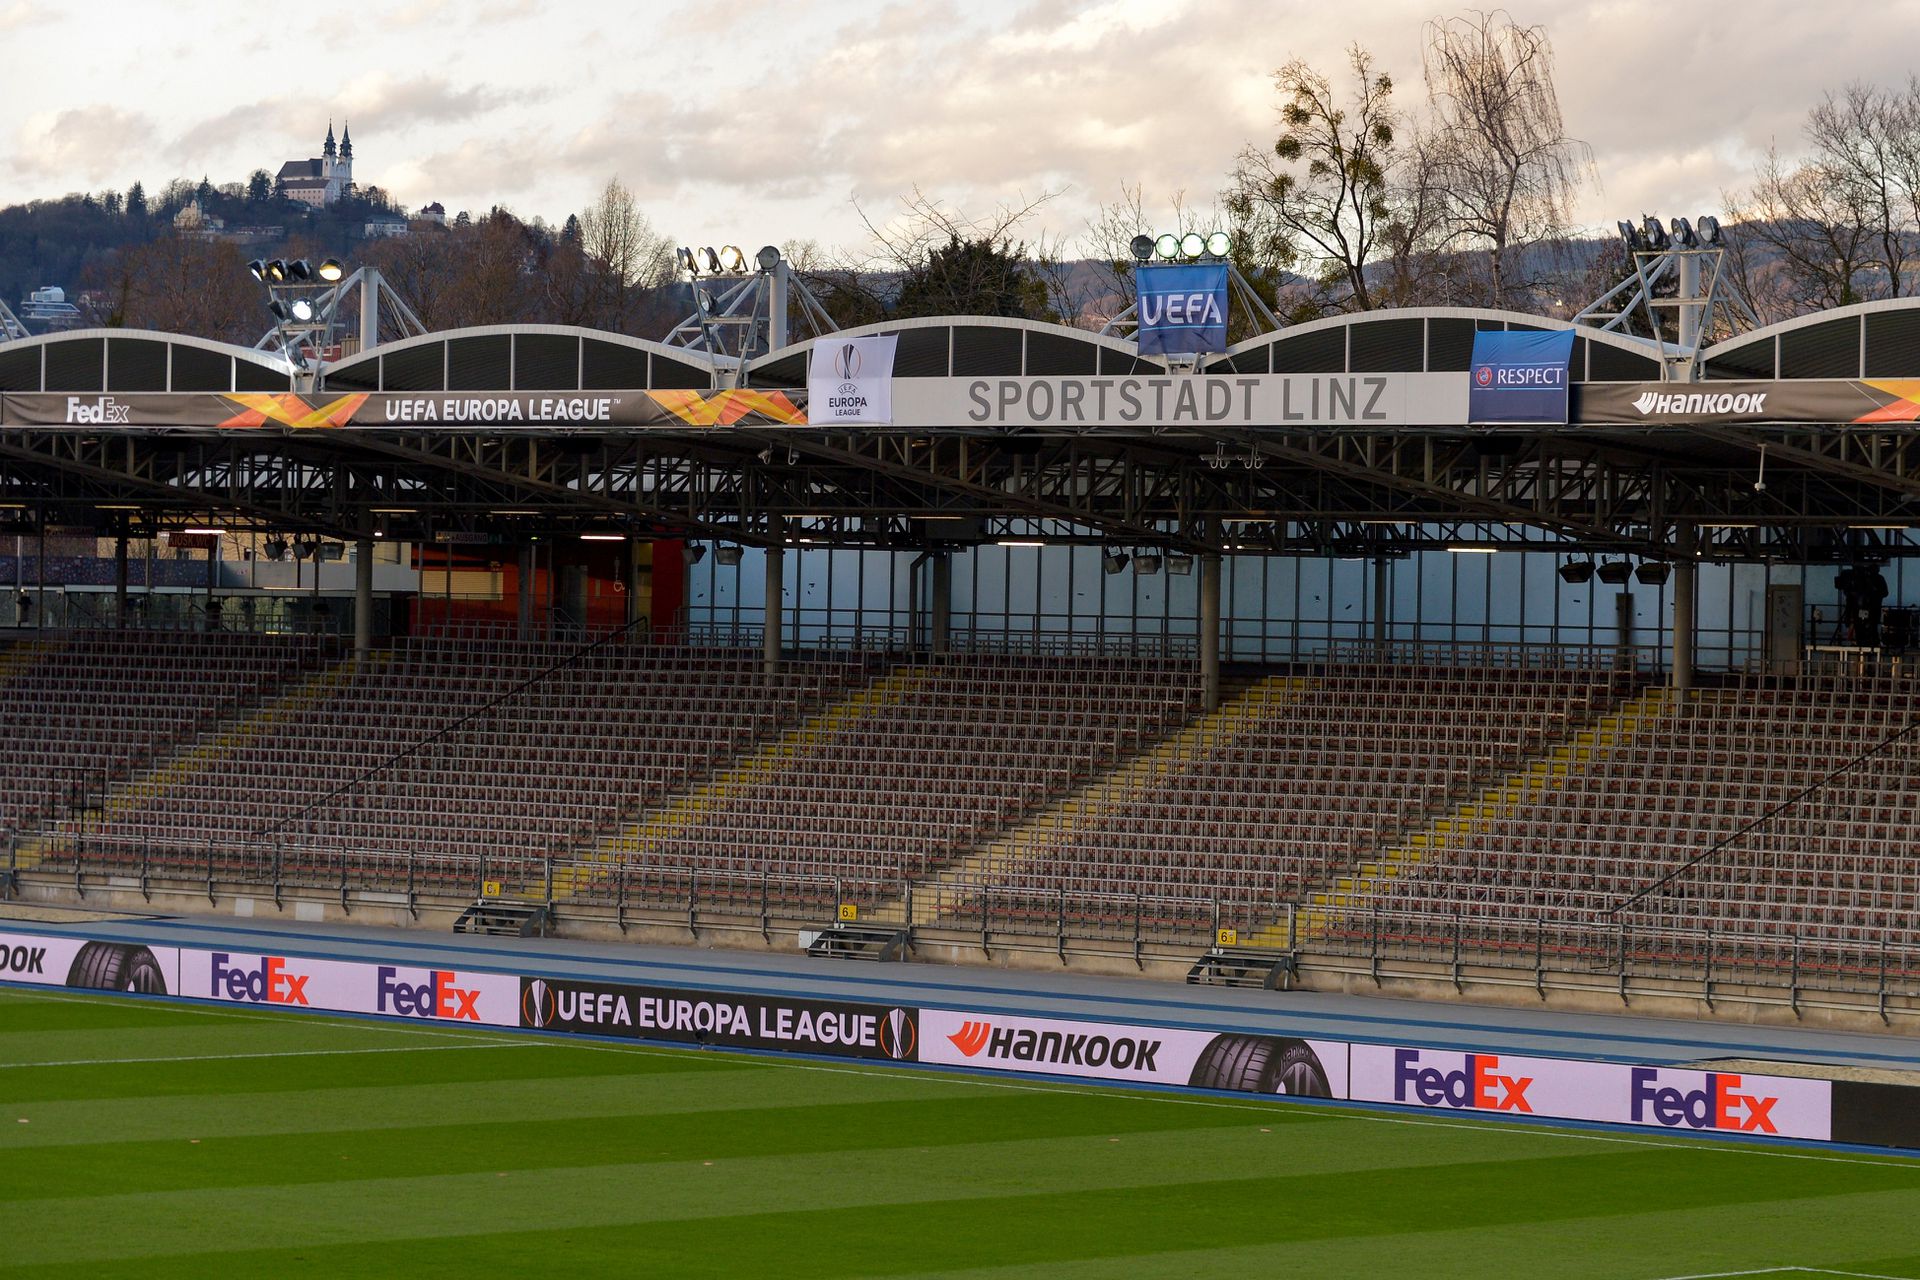 Ahogy már márciusban,most is üres stadionban lesznek a meccsek. / Fotó: Gettyimages